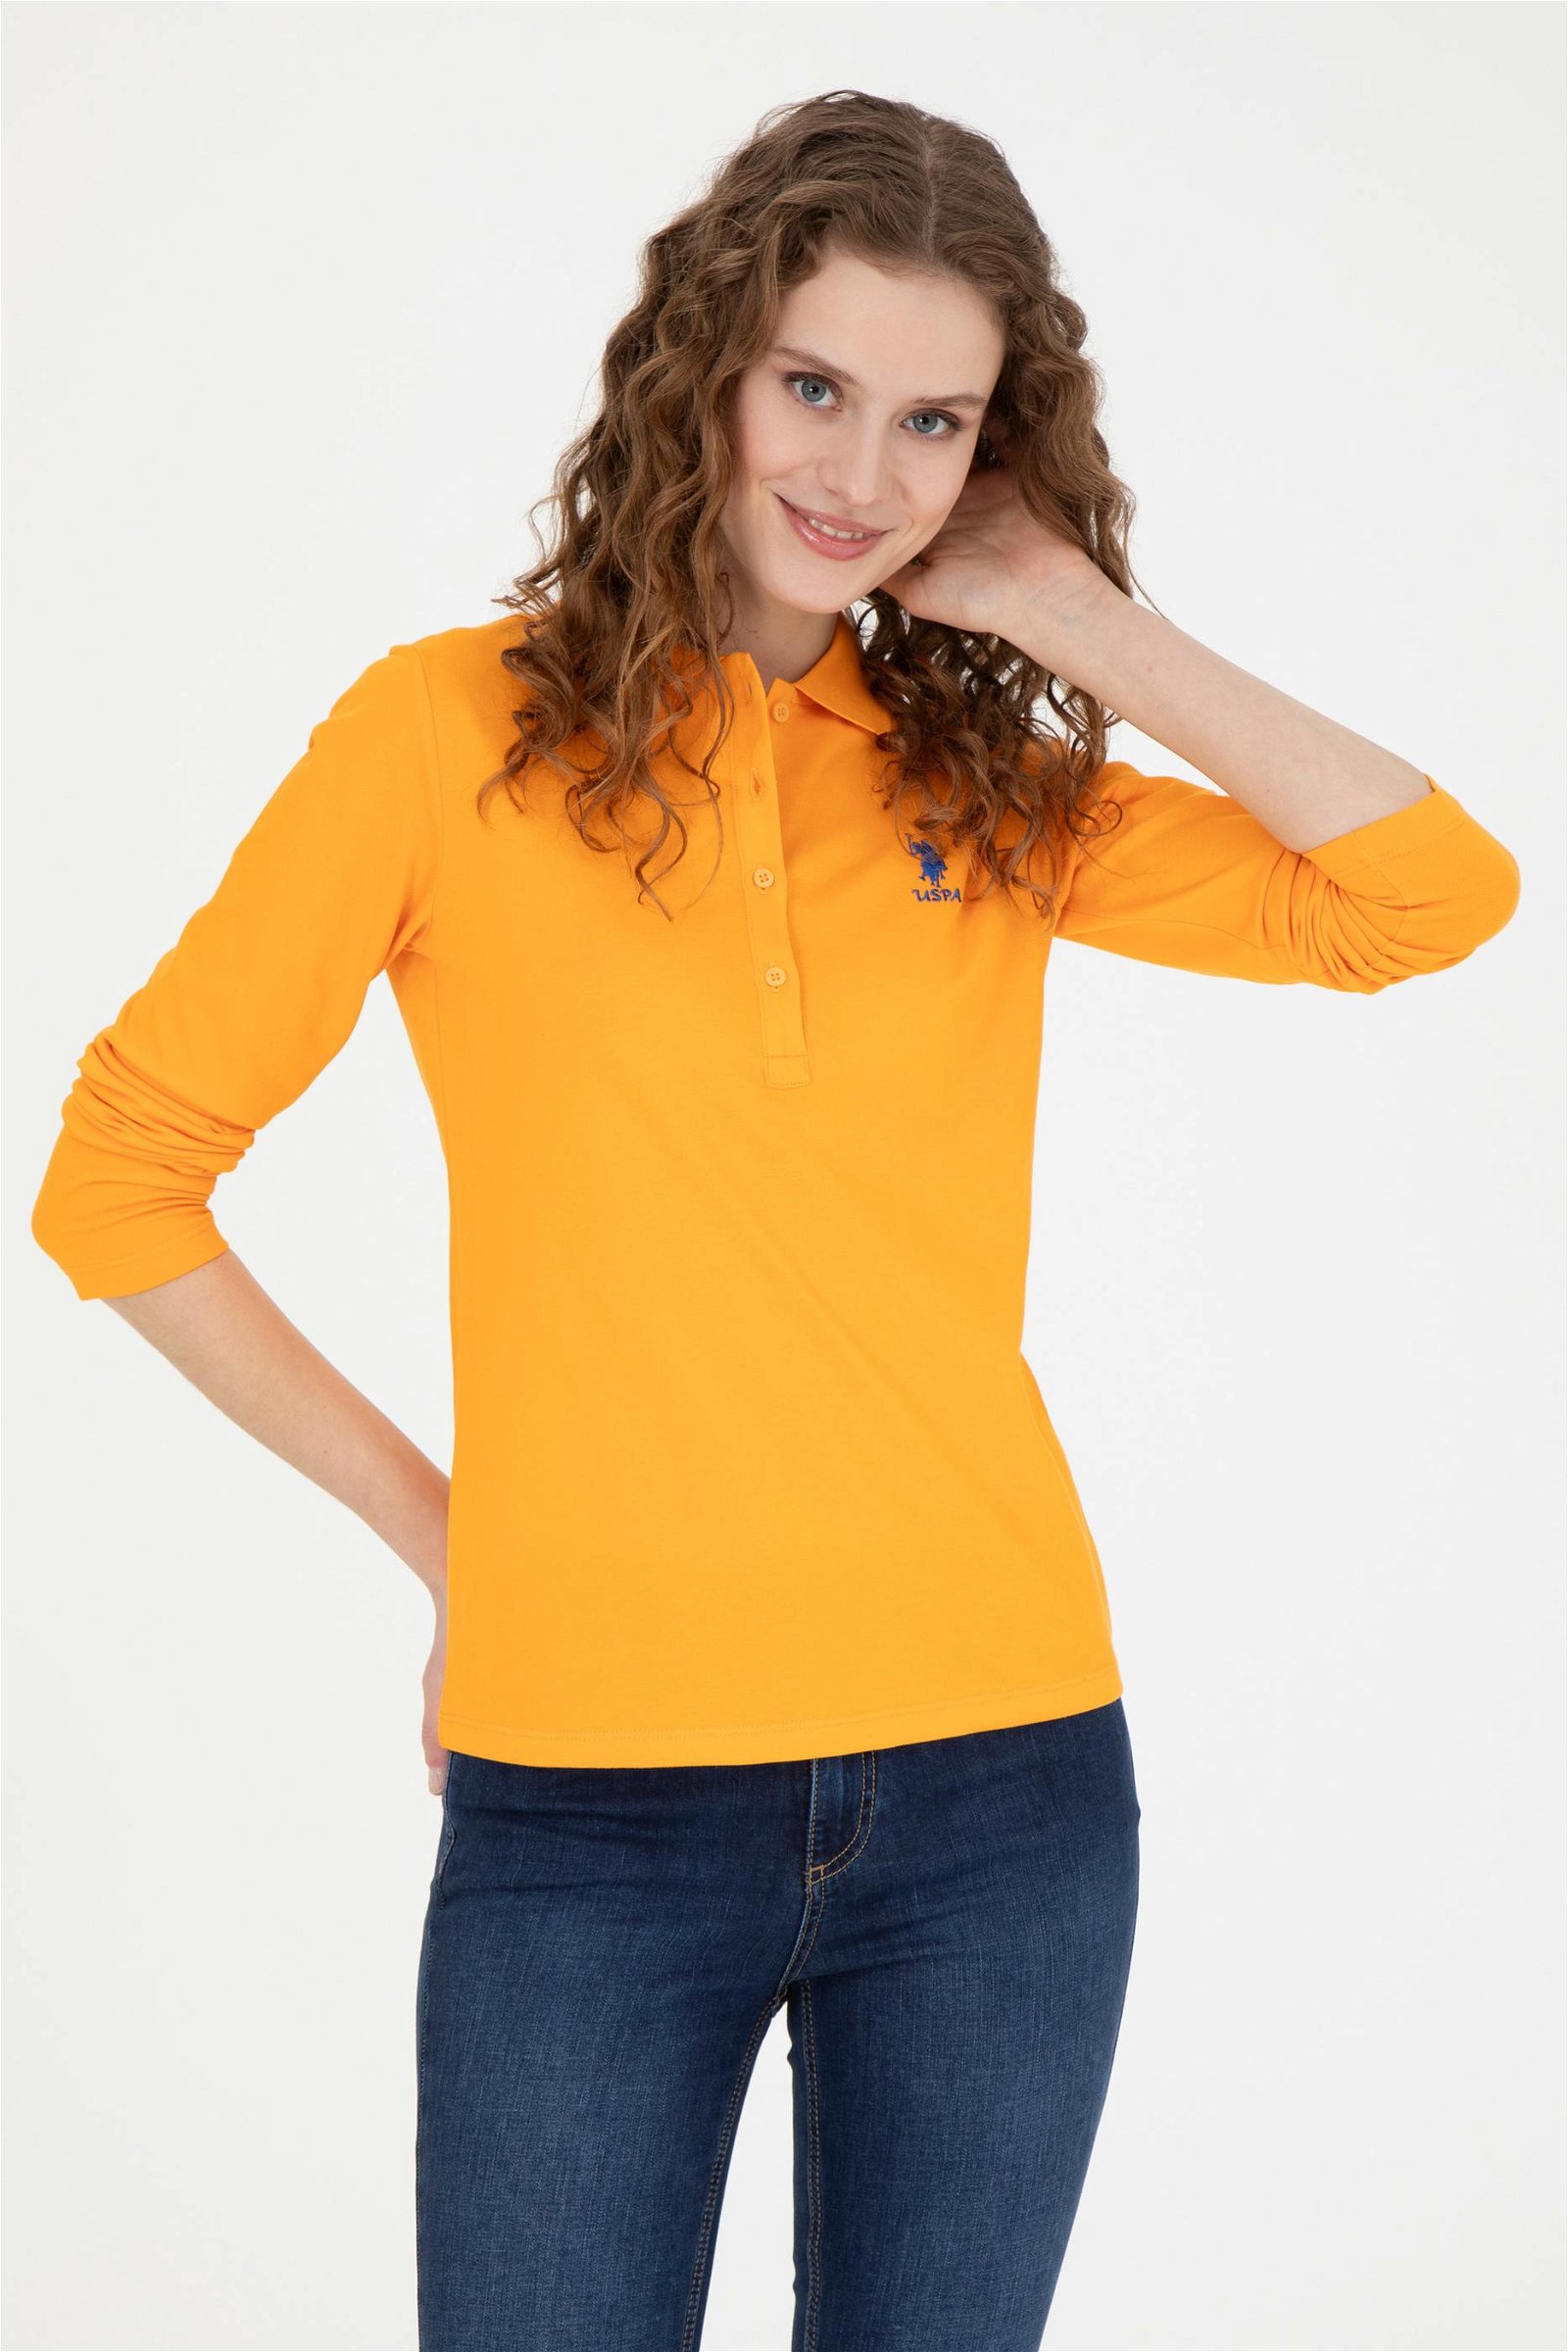 Kadın Turuncu Basic Sweatshirt